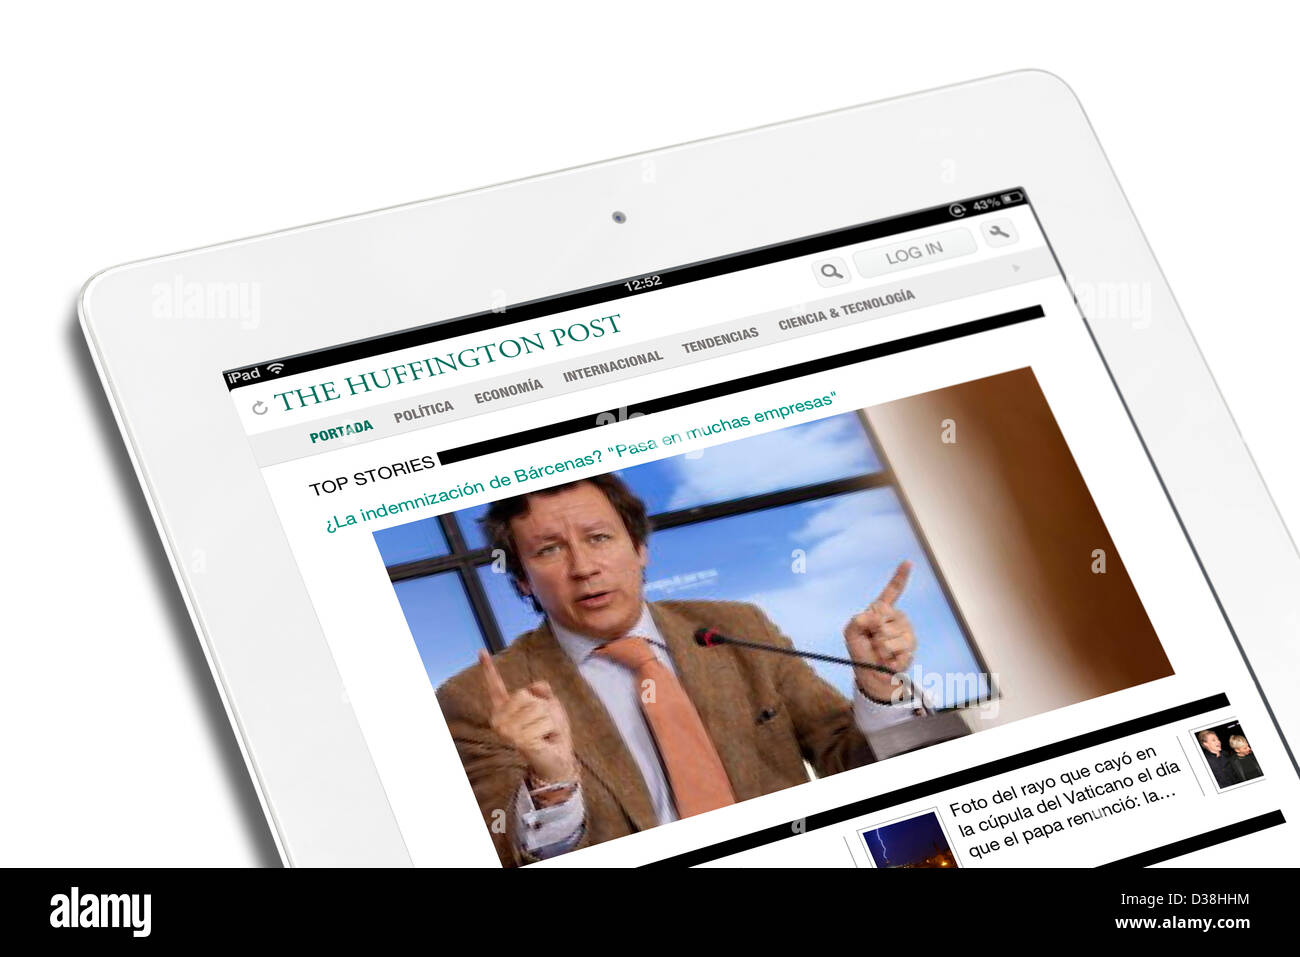 Application iPad montrant l'édition espagnole du Huffington Post sur un Apple iPad 4e génération Banque D'Images